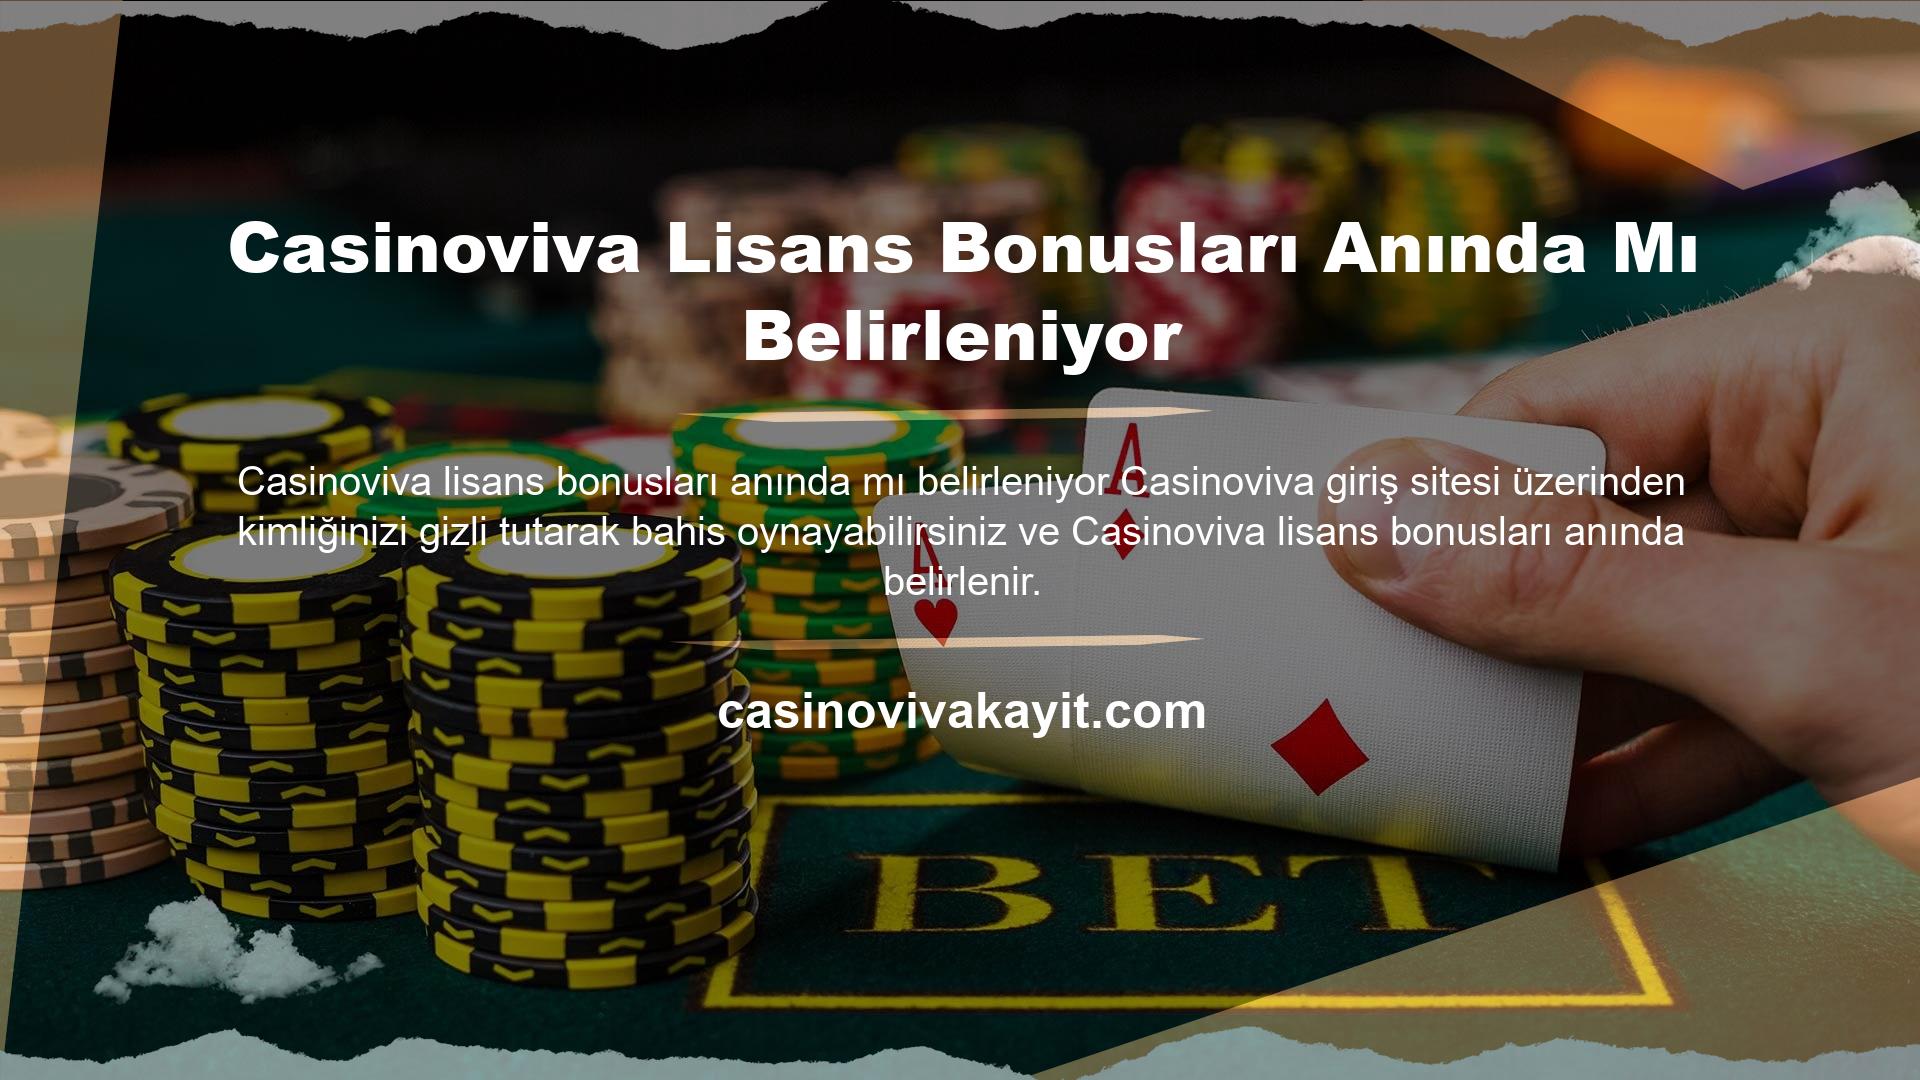 Casinoviva Lisans Bonusları Anında Mı Belirleniyor